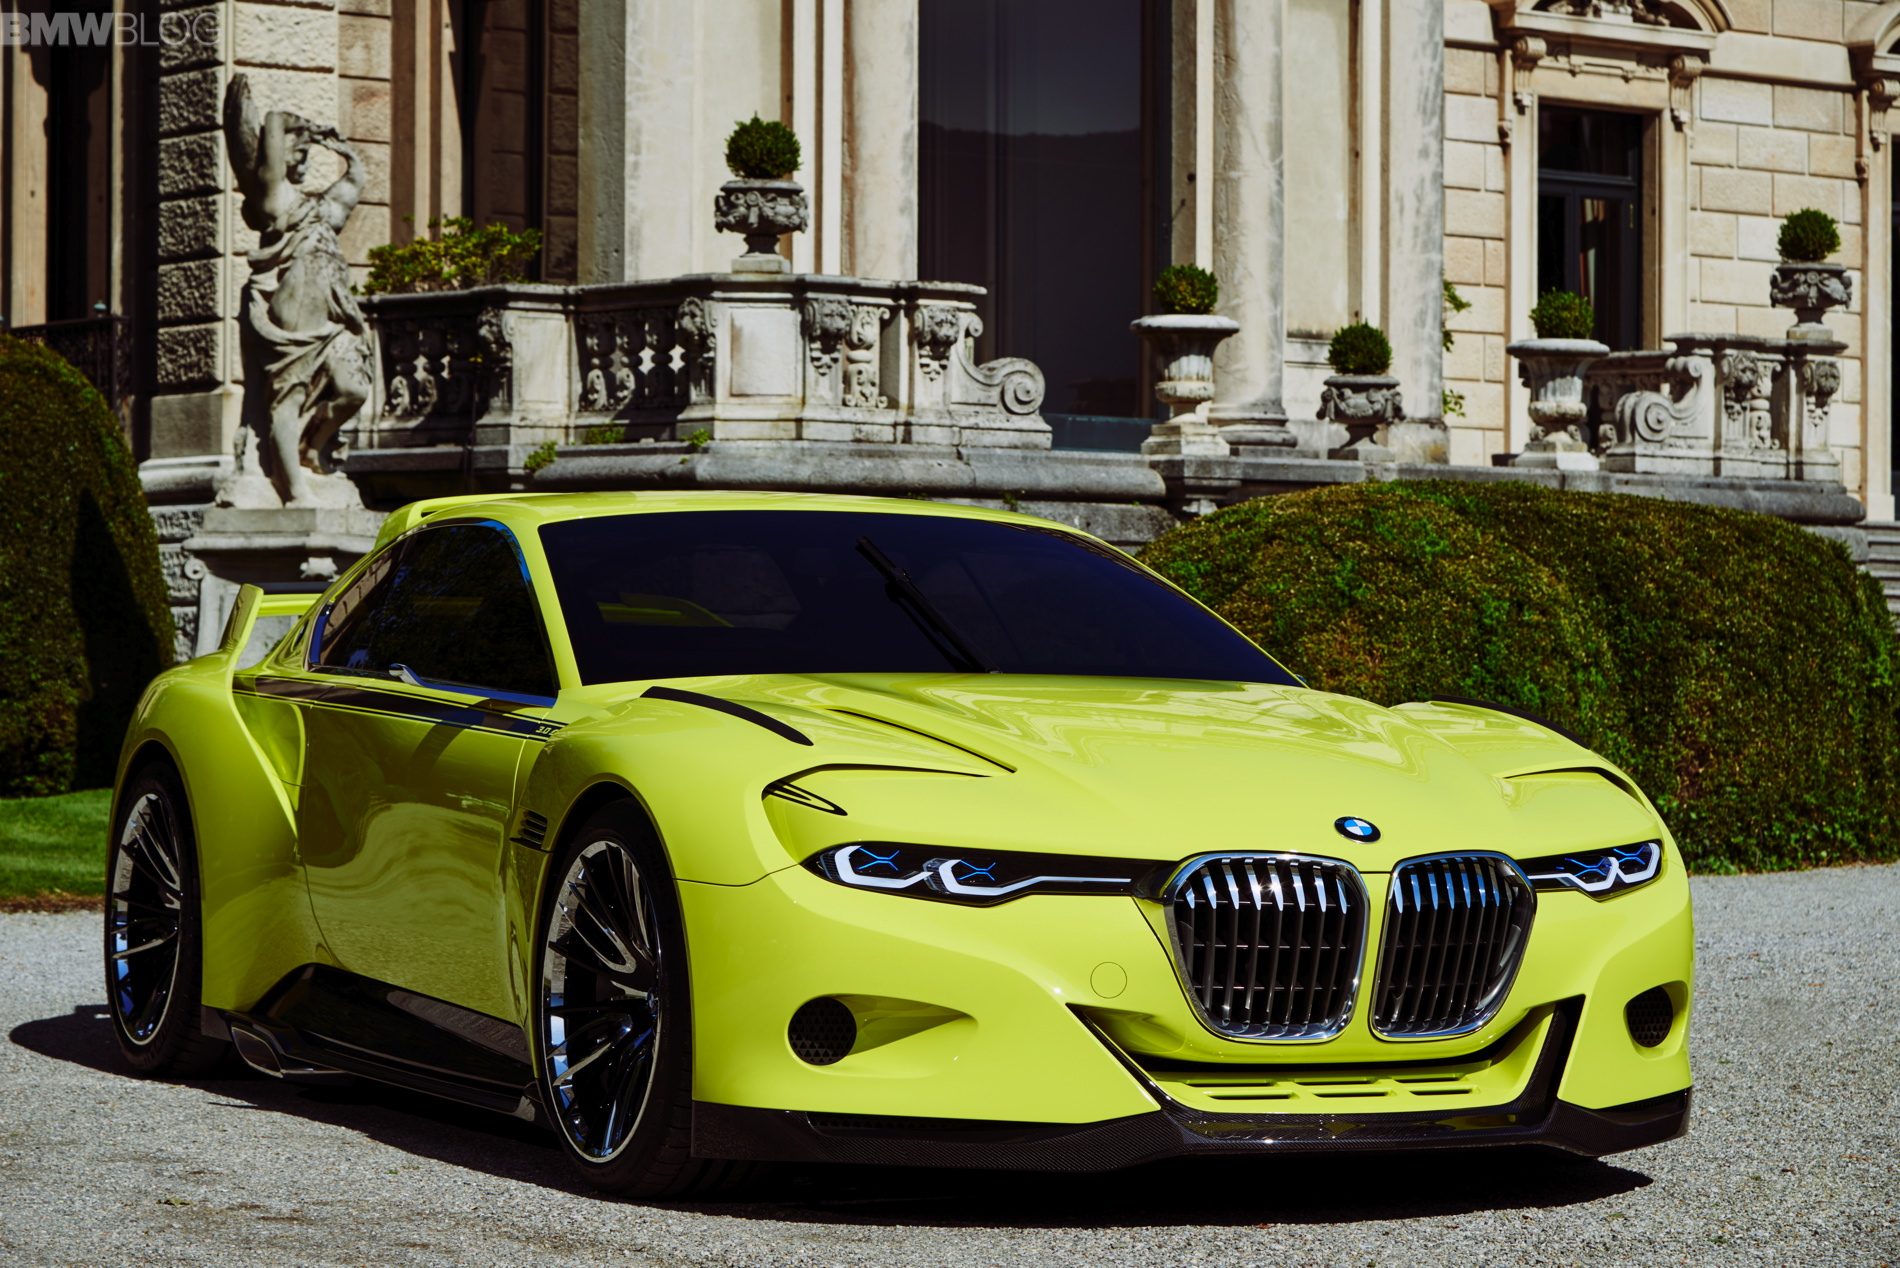 3 avto. BMW 3.0 CSL 2020. БМВ 3.0 CSL hommage Concept. BMW 3.0 CSL hommage Concept чёрная. BMW hommage 3.0.